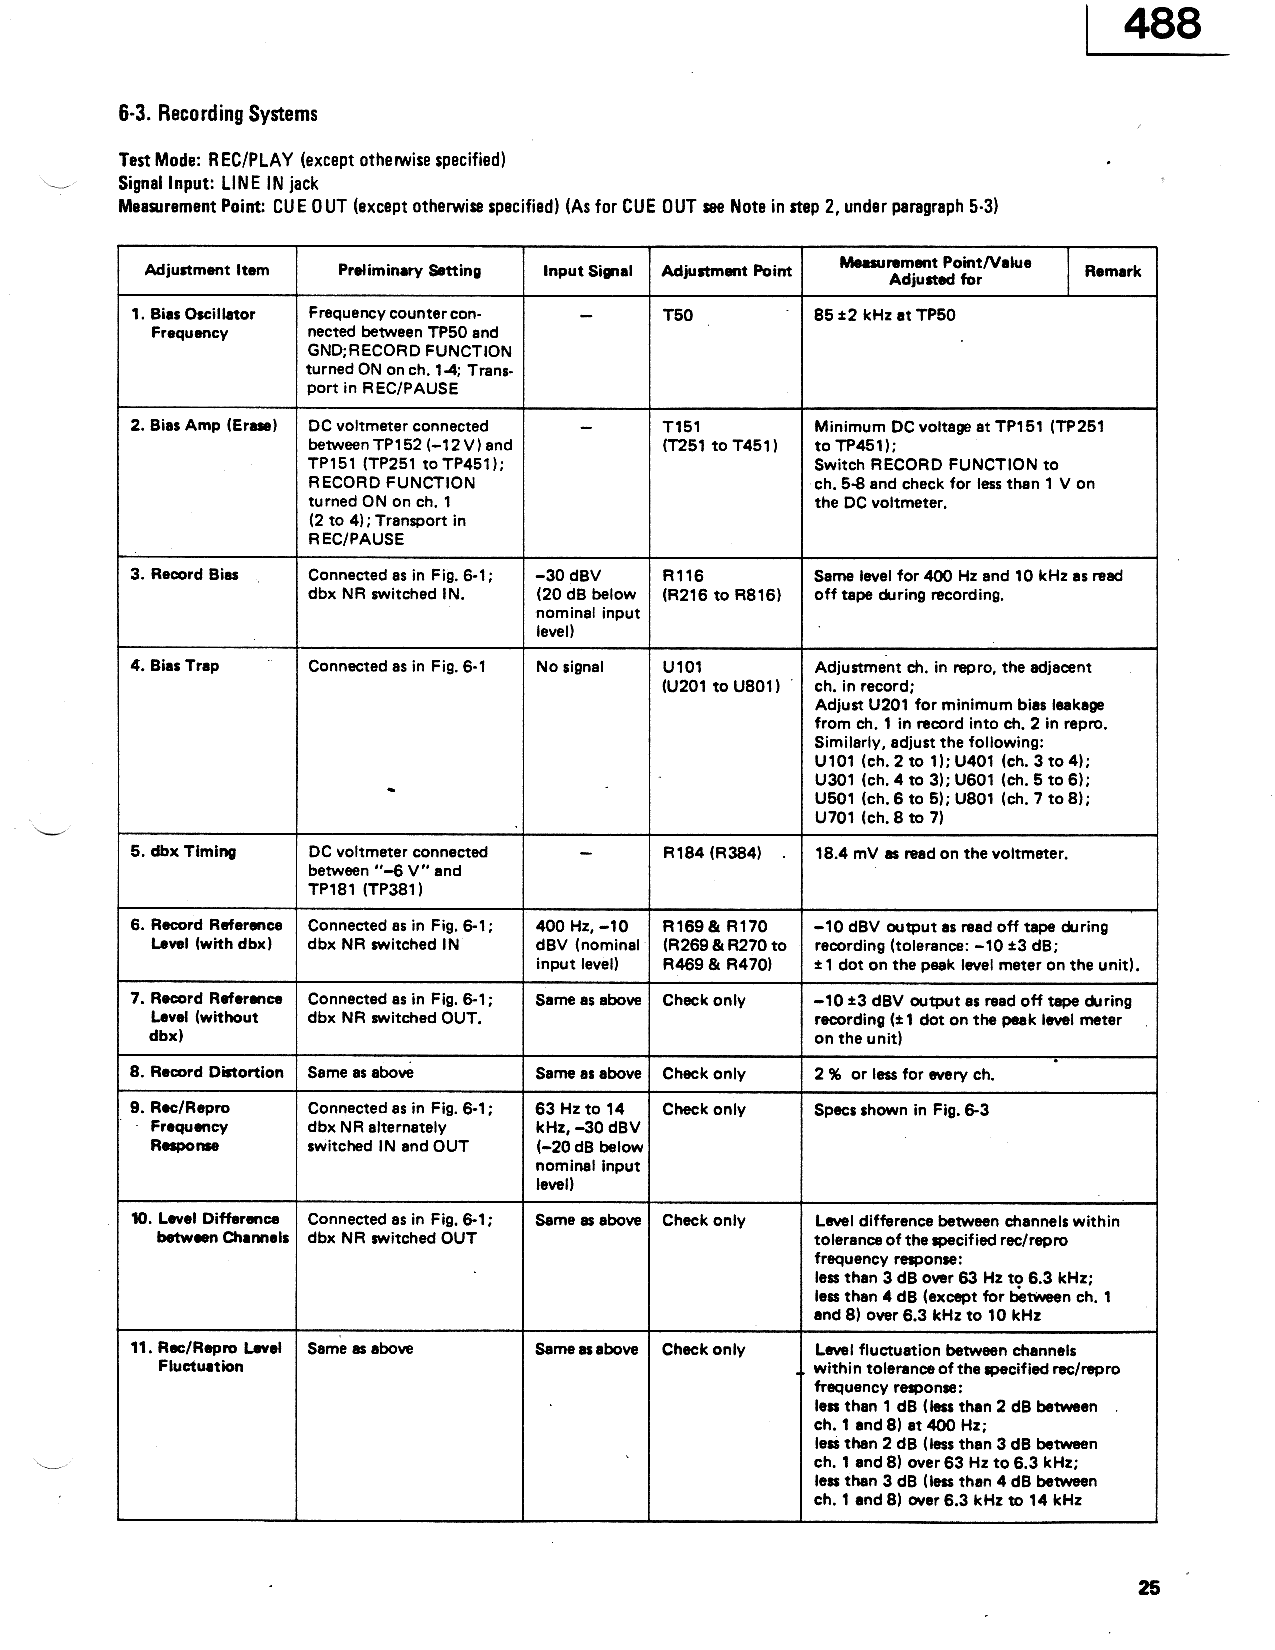 Index of /information/Tascam 488 Mk1 Service Manual (PNG)